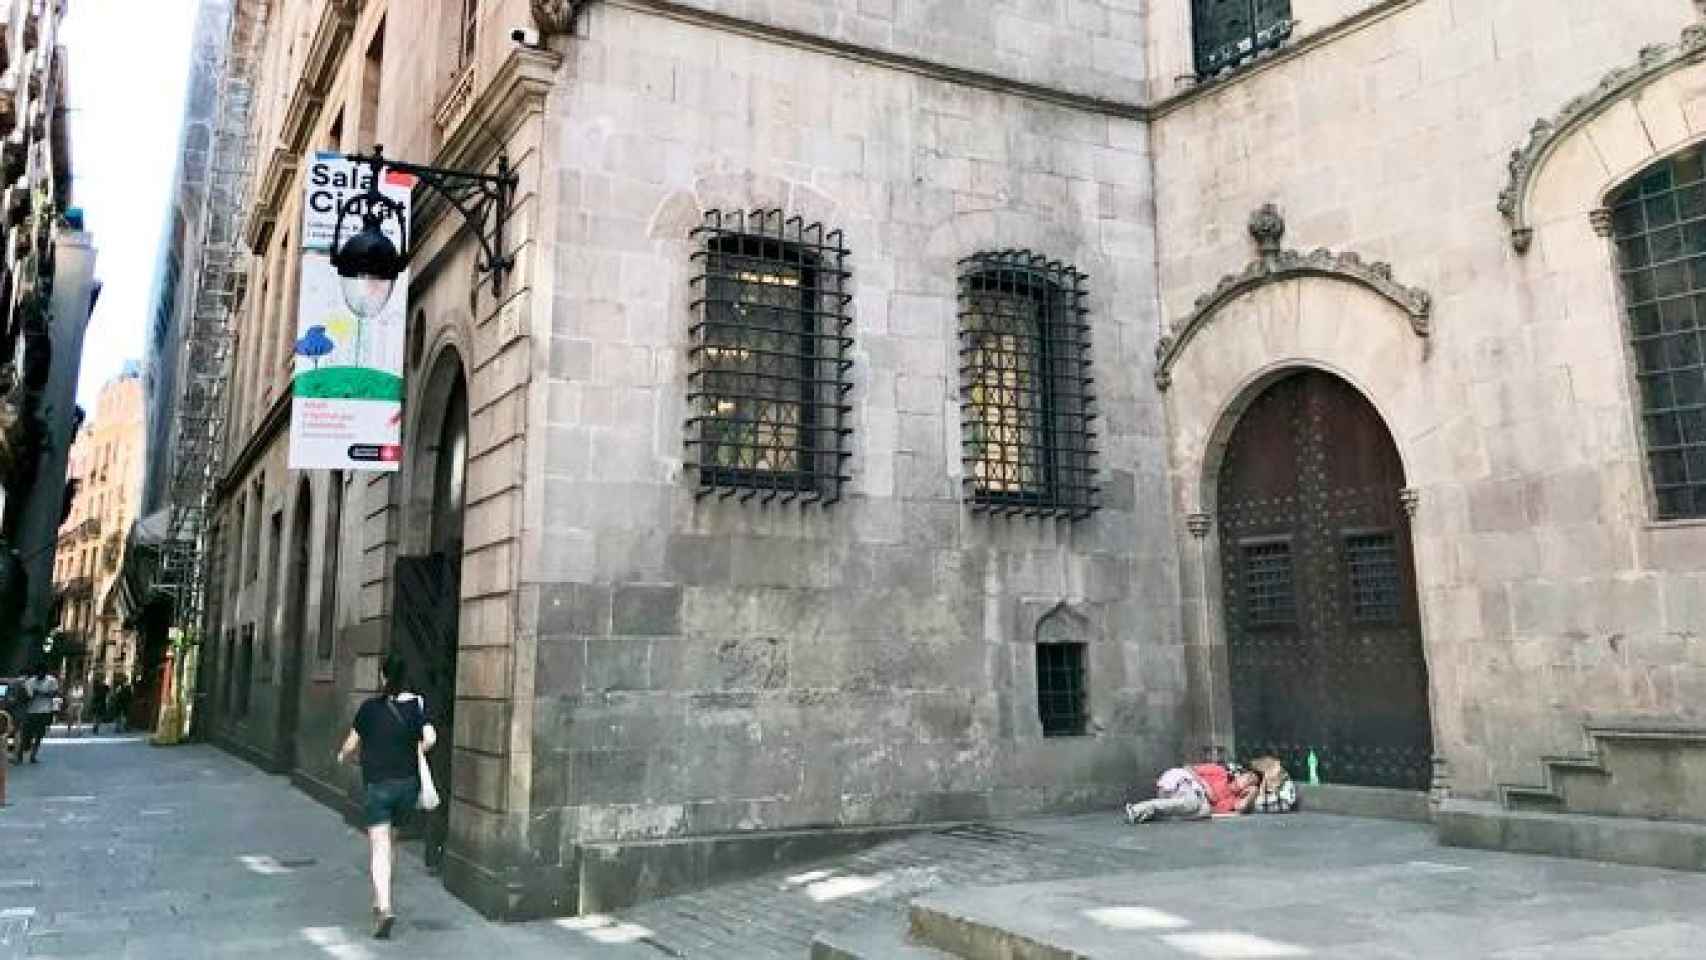 Imagen de la parte trasera del Ayuntamiento de Barcelona con una persona durmiendo en la calle / @mcrodes